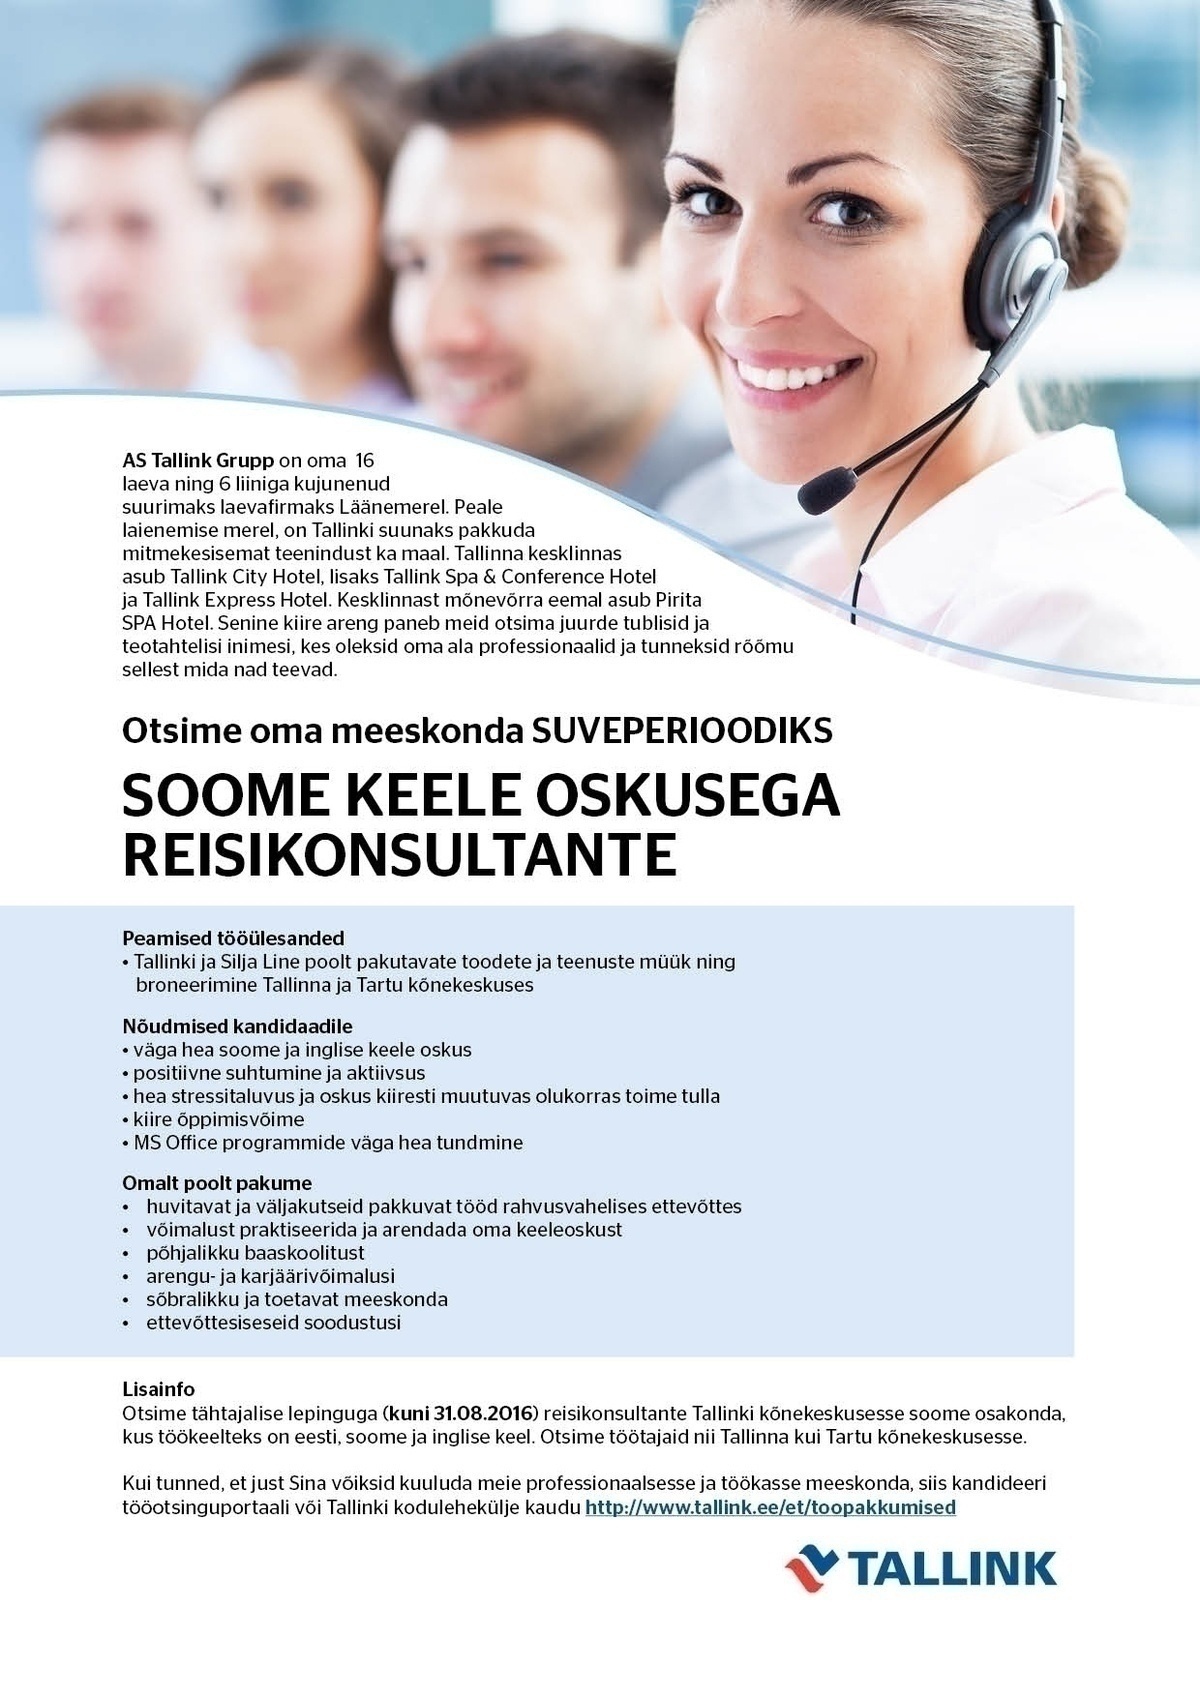 Tallink Grupp AS Soome keele oskusega reisikonsultant (suveperioodiks)